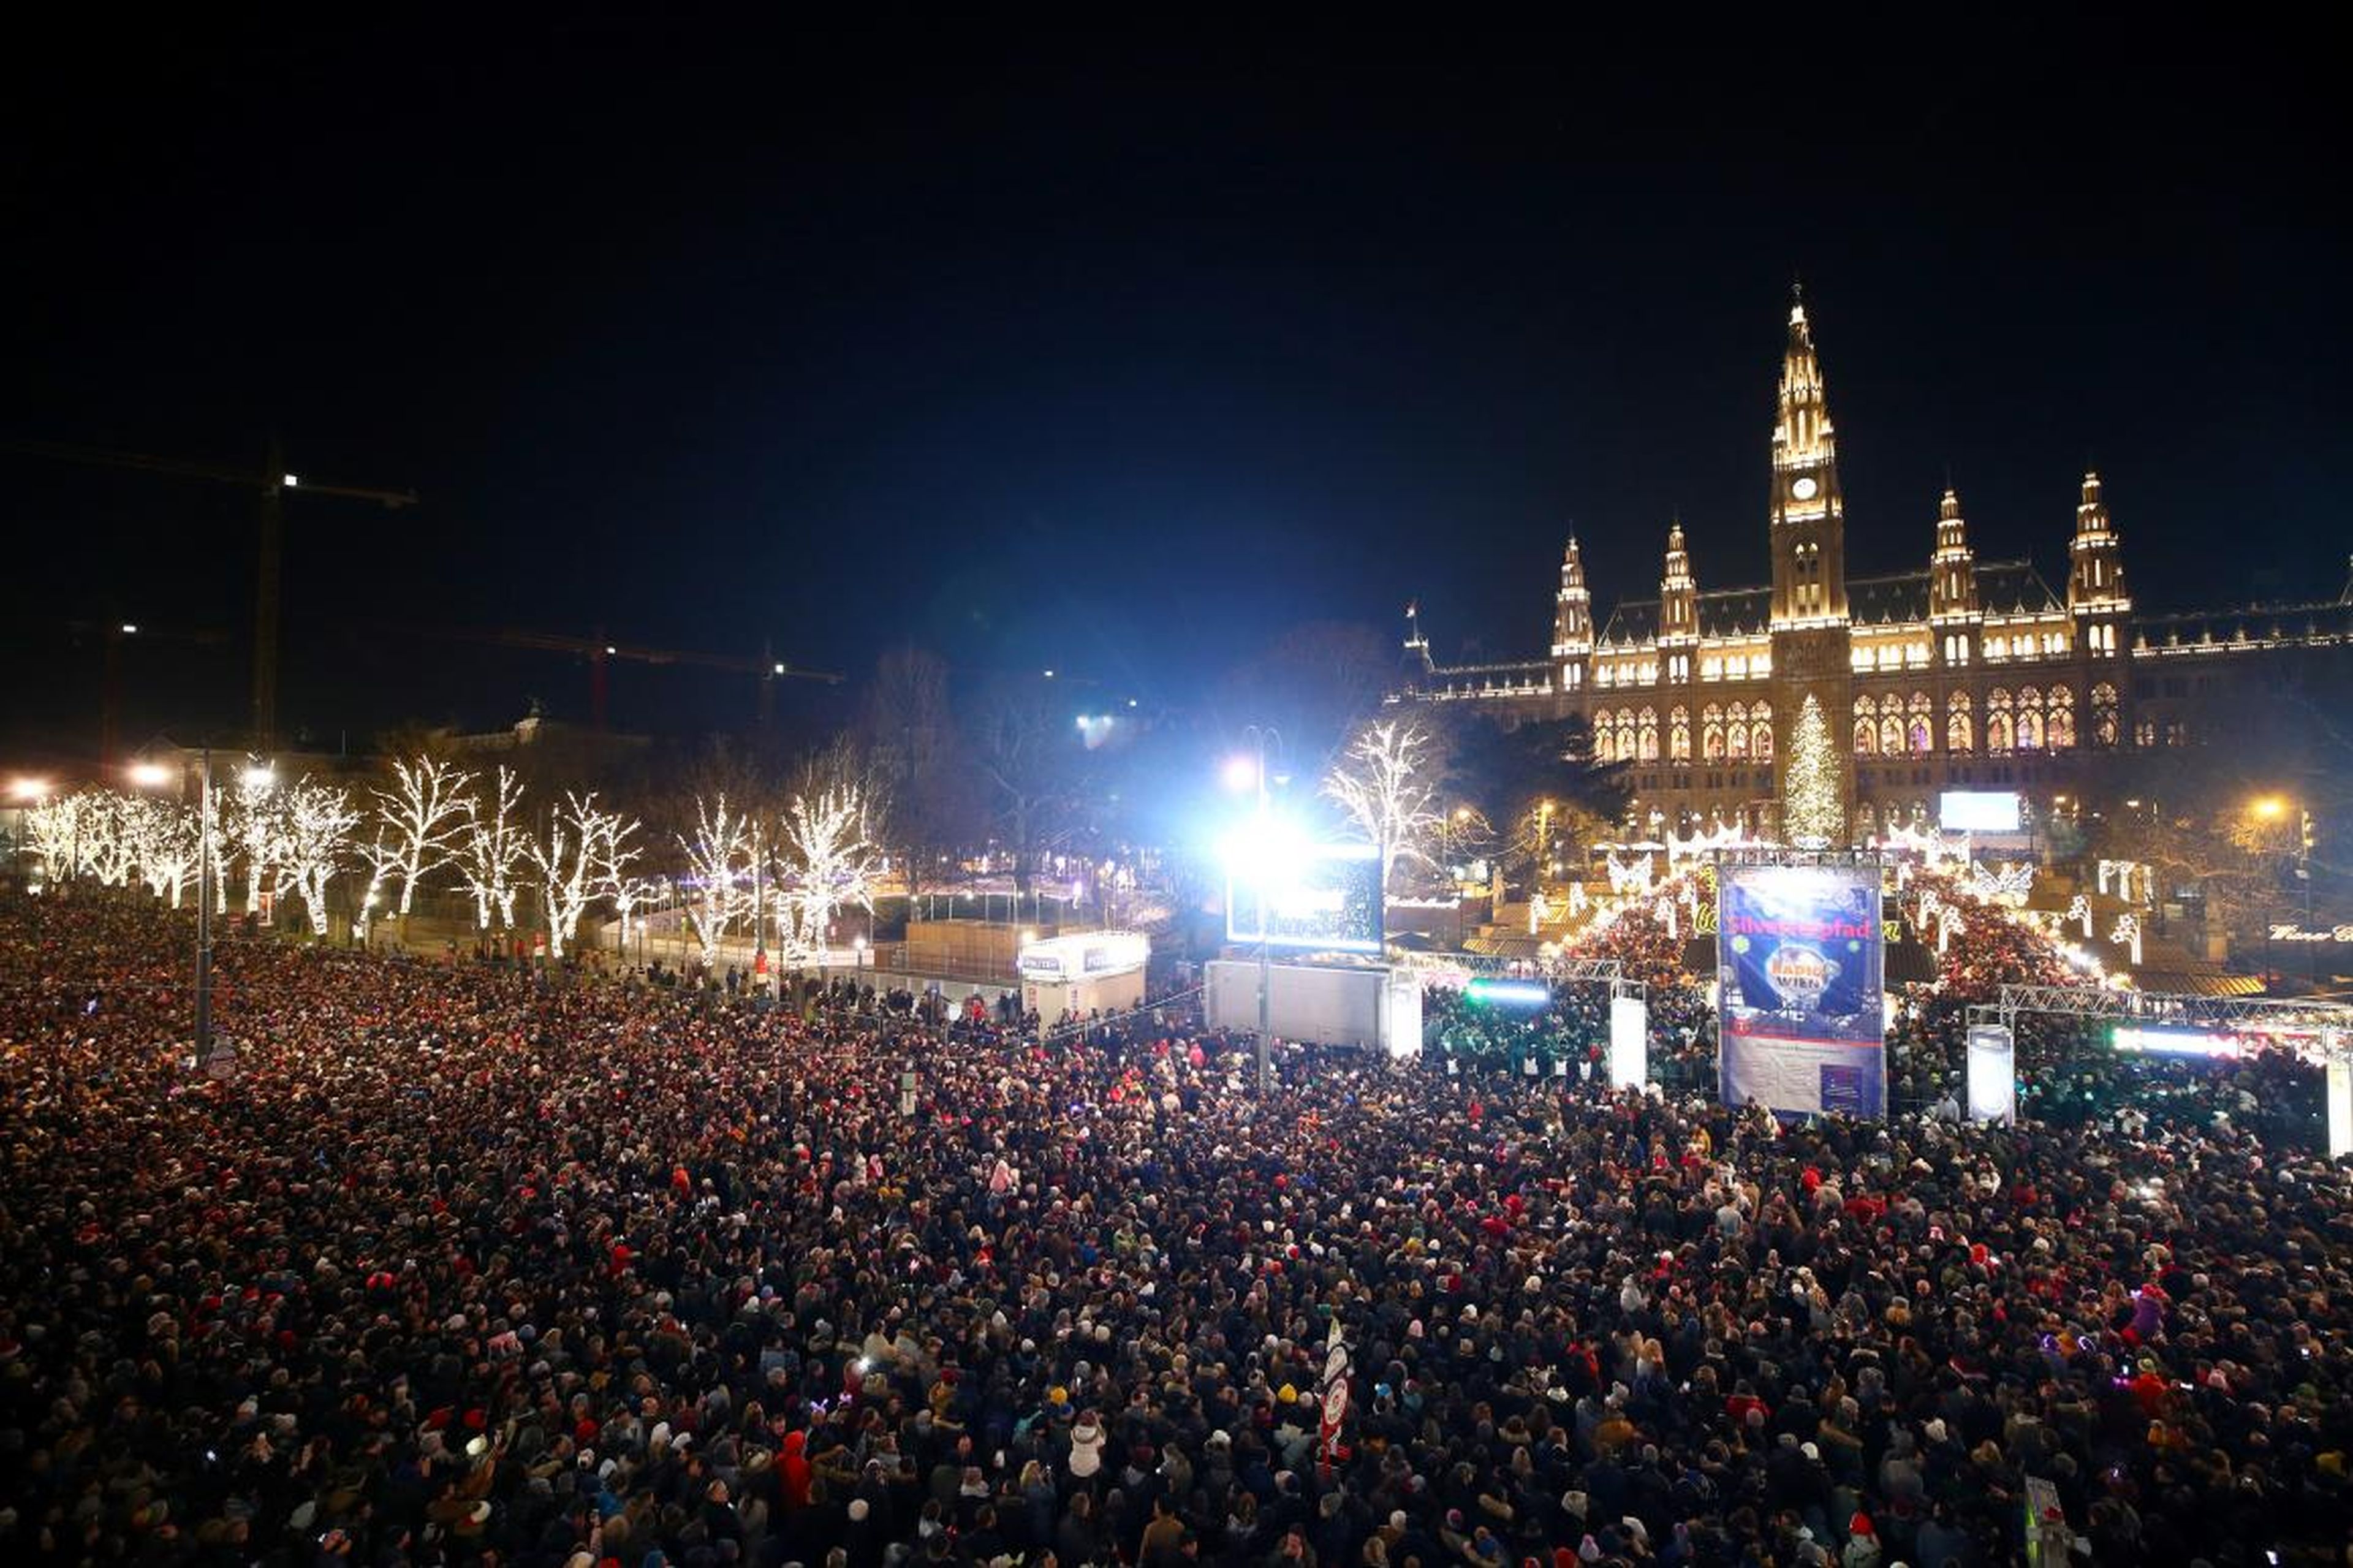 Los espectadores esperan a los fuegos artificiales en el ayuntamiento de Viena durante las celebraciones de Nochevieja en el 'Wiener Silvesterpfad' en Viena, Austria, el 31 de diciembre de 2018.